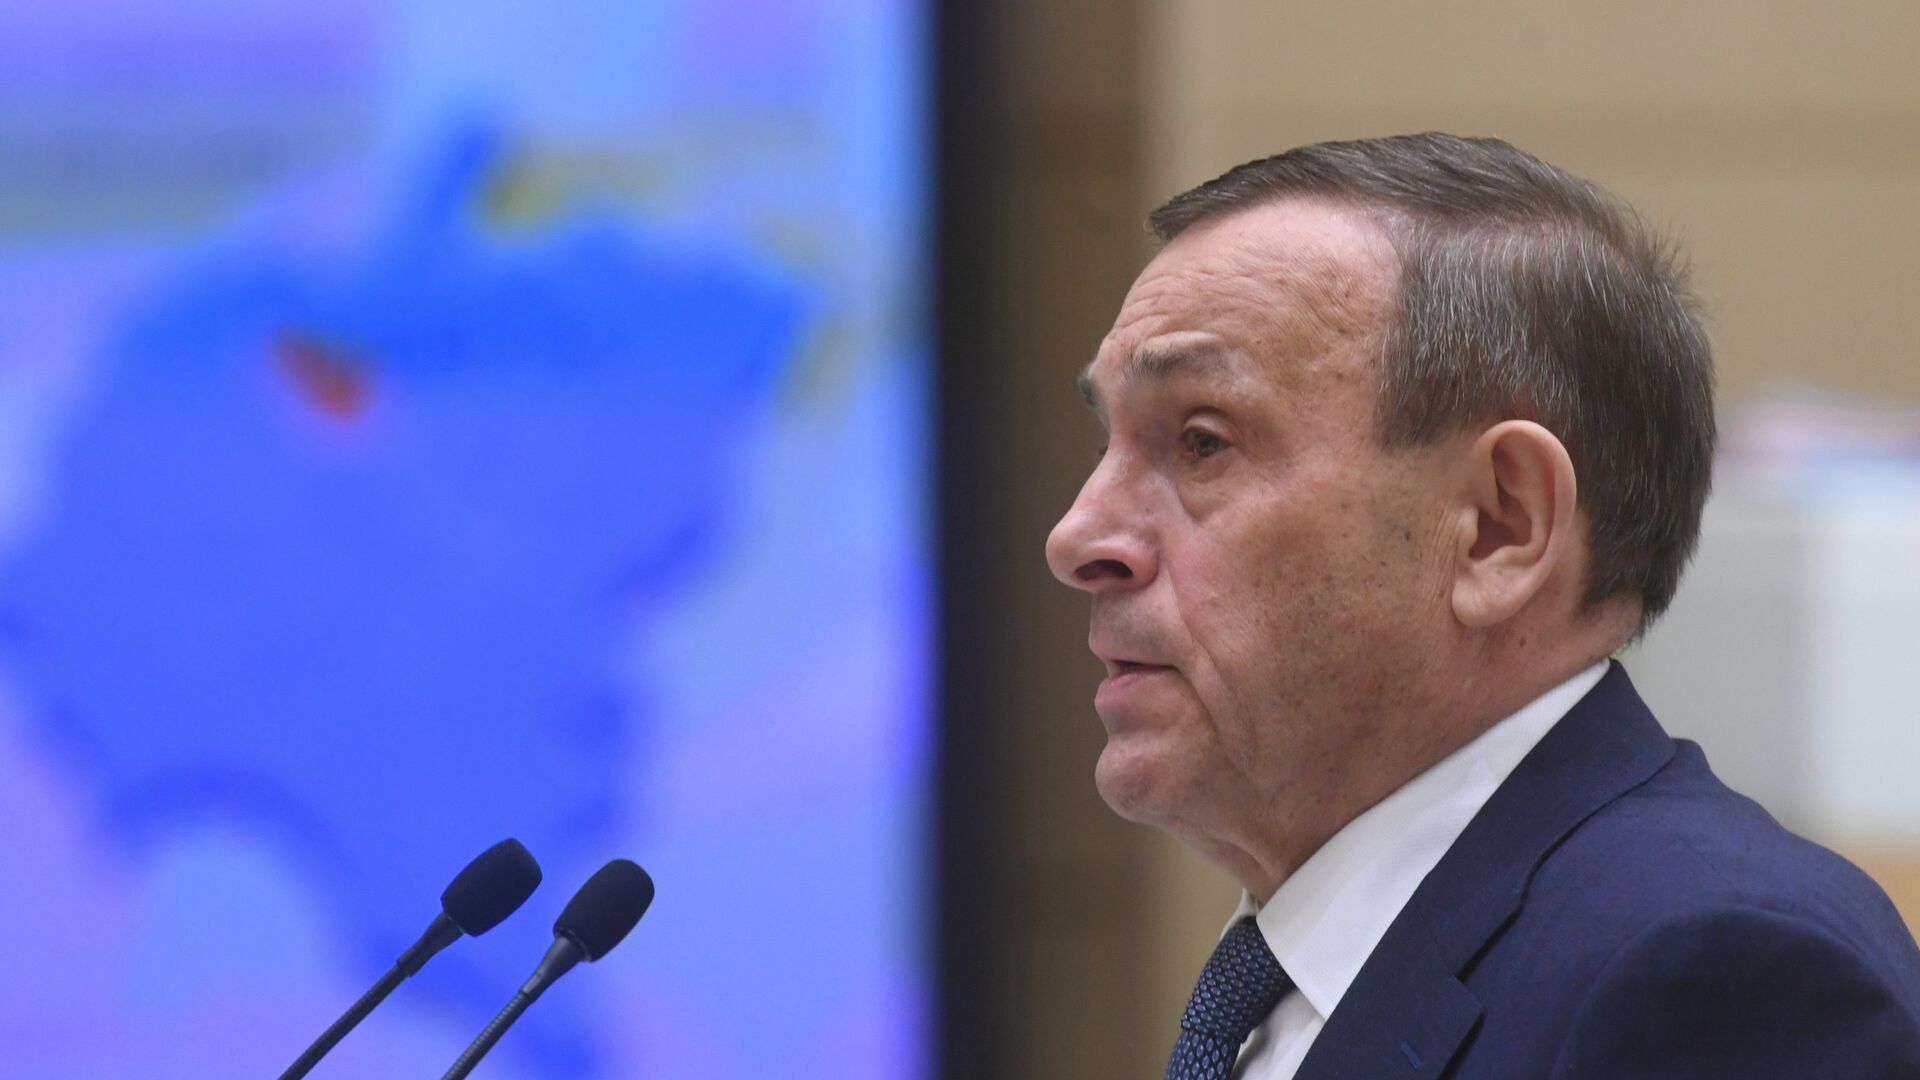 Офис кировского губернатора отказался комментировать слухи о его отставке